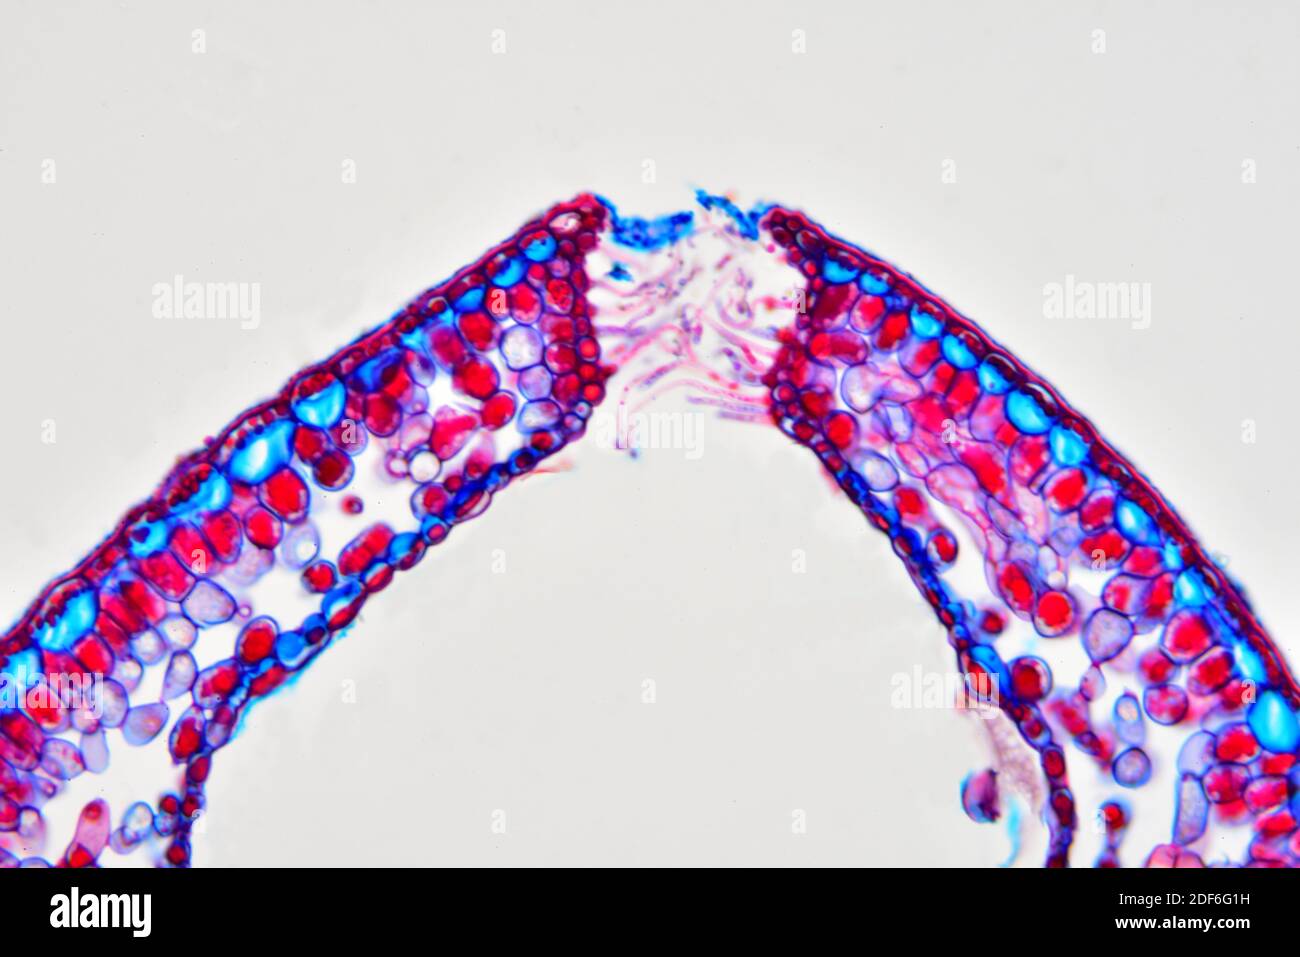 Feuille roulée de Calluna vulgaris montrant des stomates en contrebas. Microscope optique X200. Banque D'Images